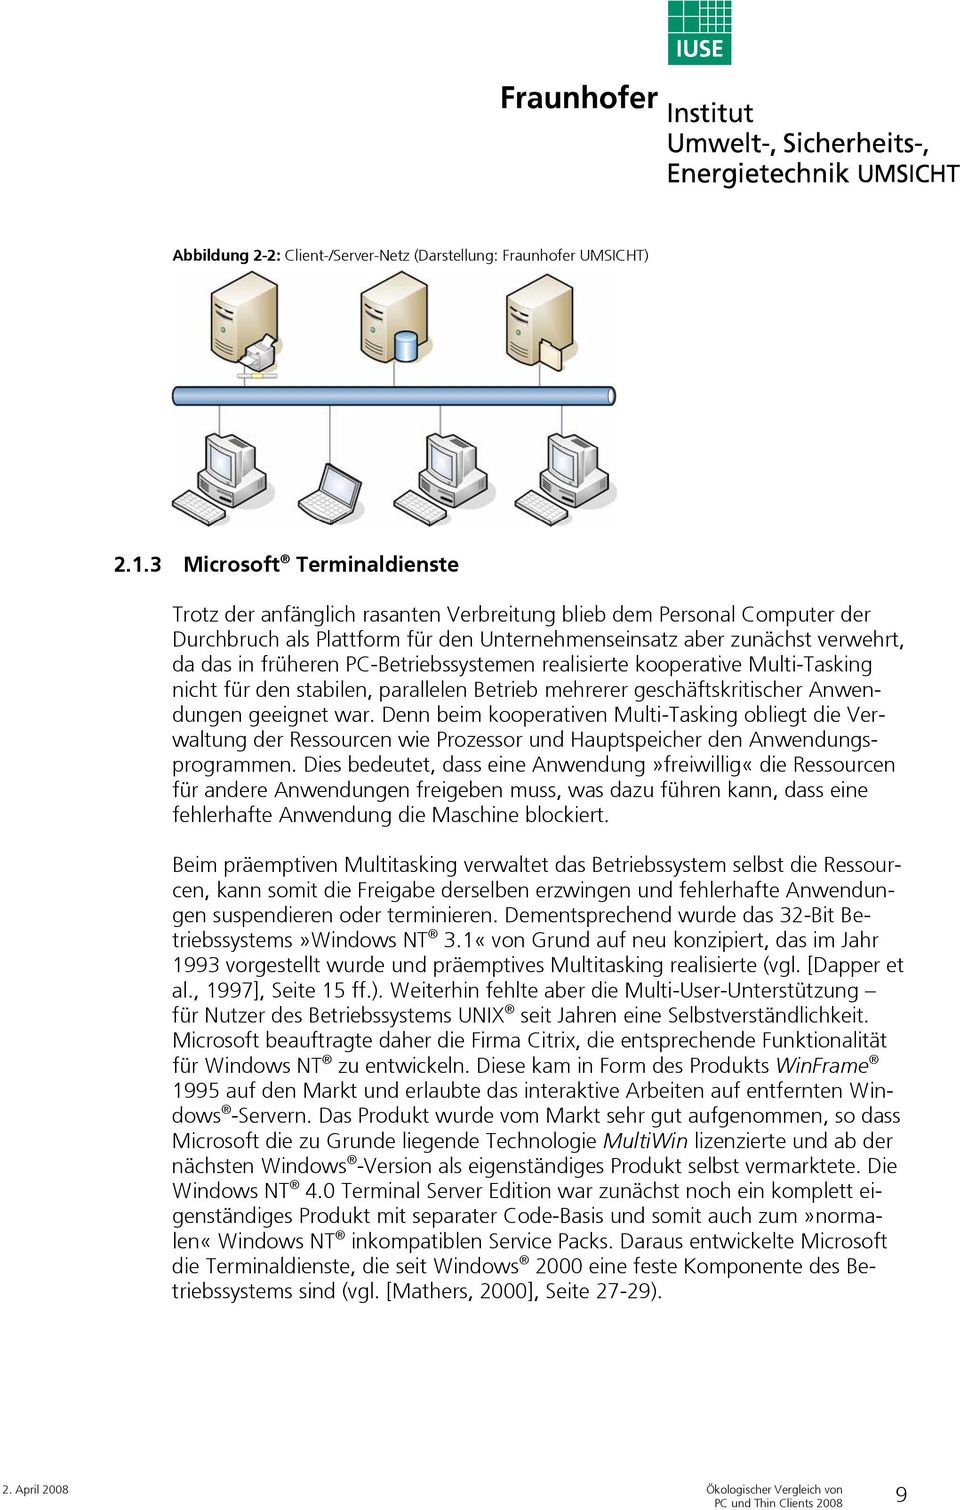 PC-Betriebssystemen realisierte kooperative Multi-Tasking nicht für den stabilen, parallelen Betrieb mehrerer geschäftskritischer Anwendungen geeignet war.